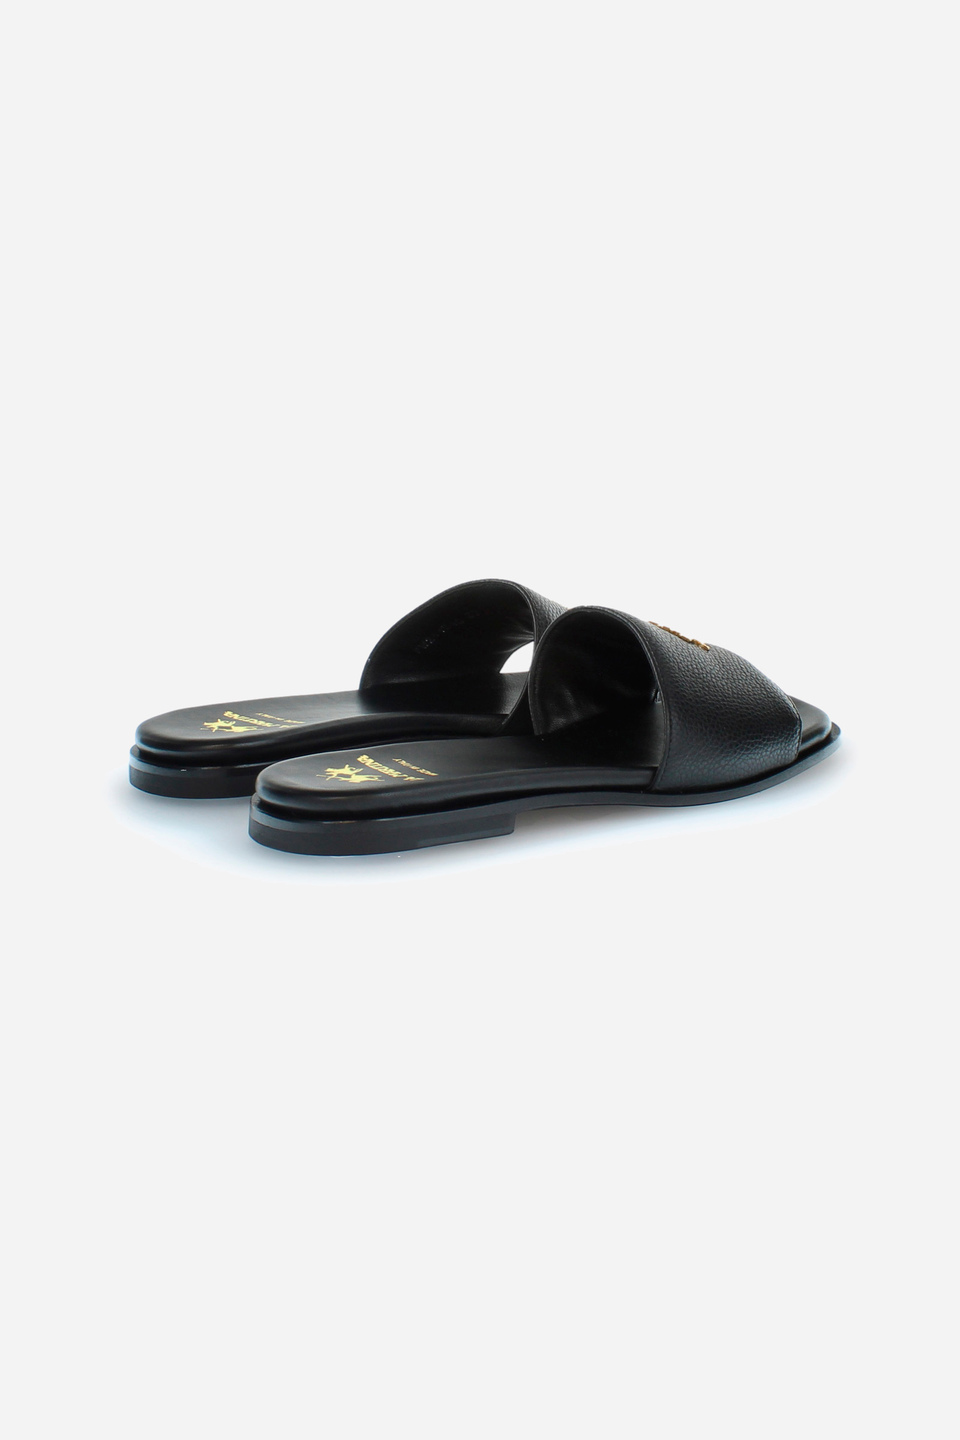 Damen-Sandale aus Leder | La Martina - Official Online Shop